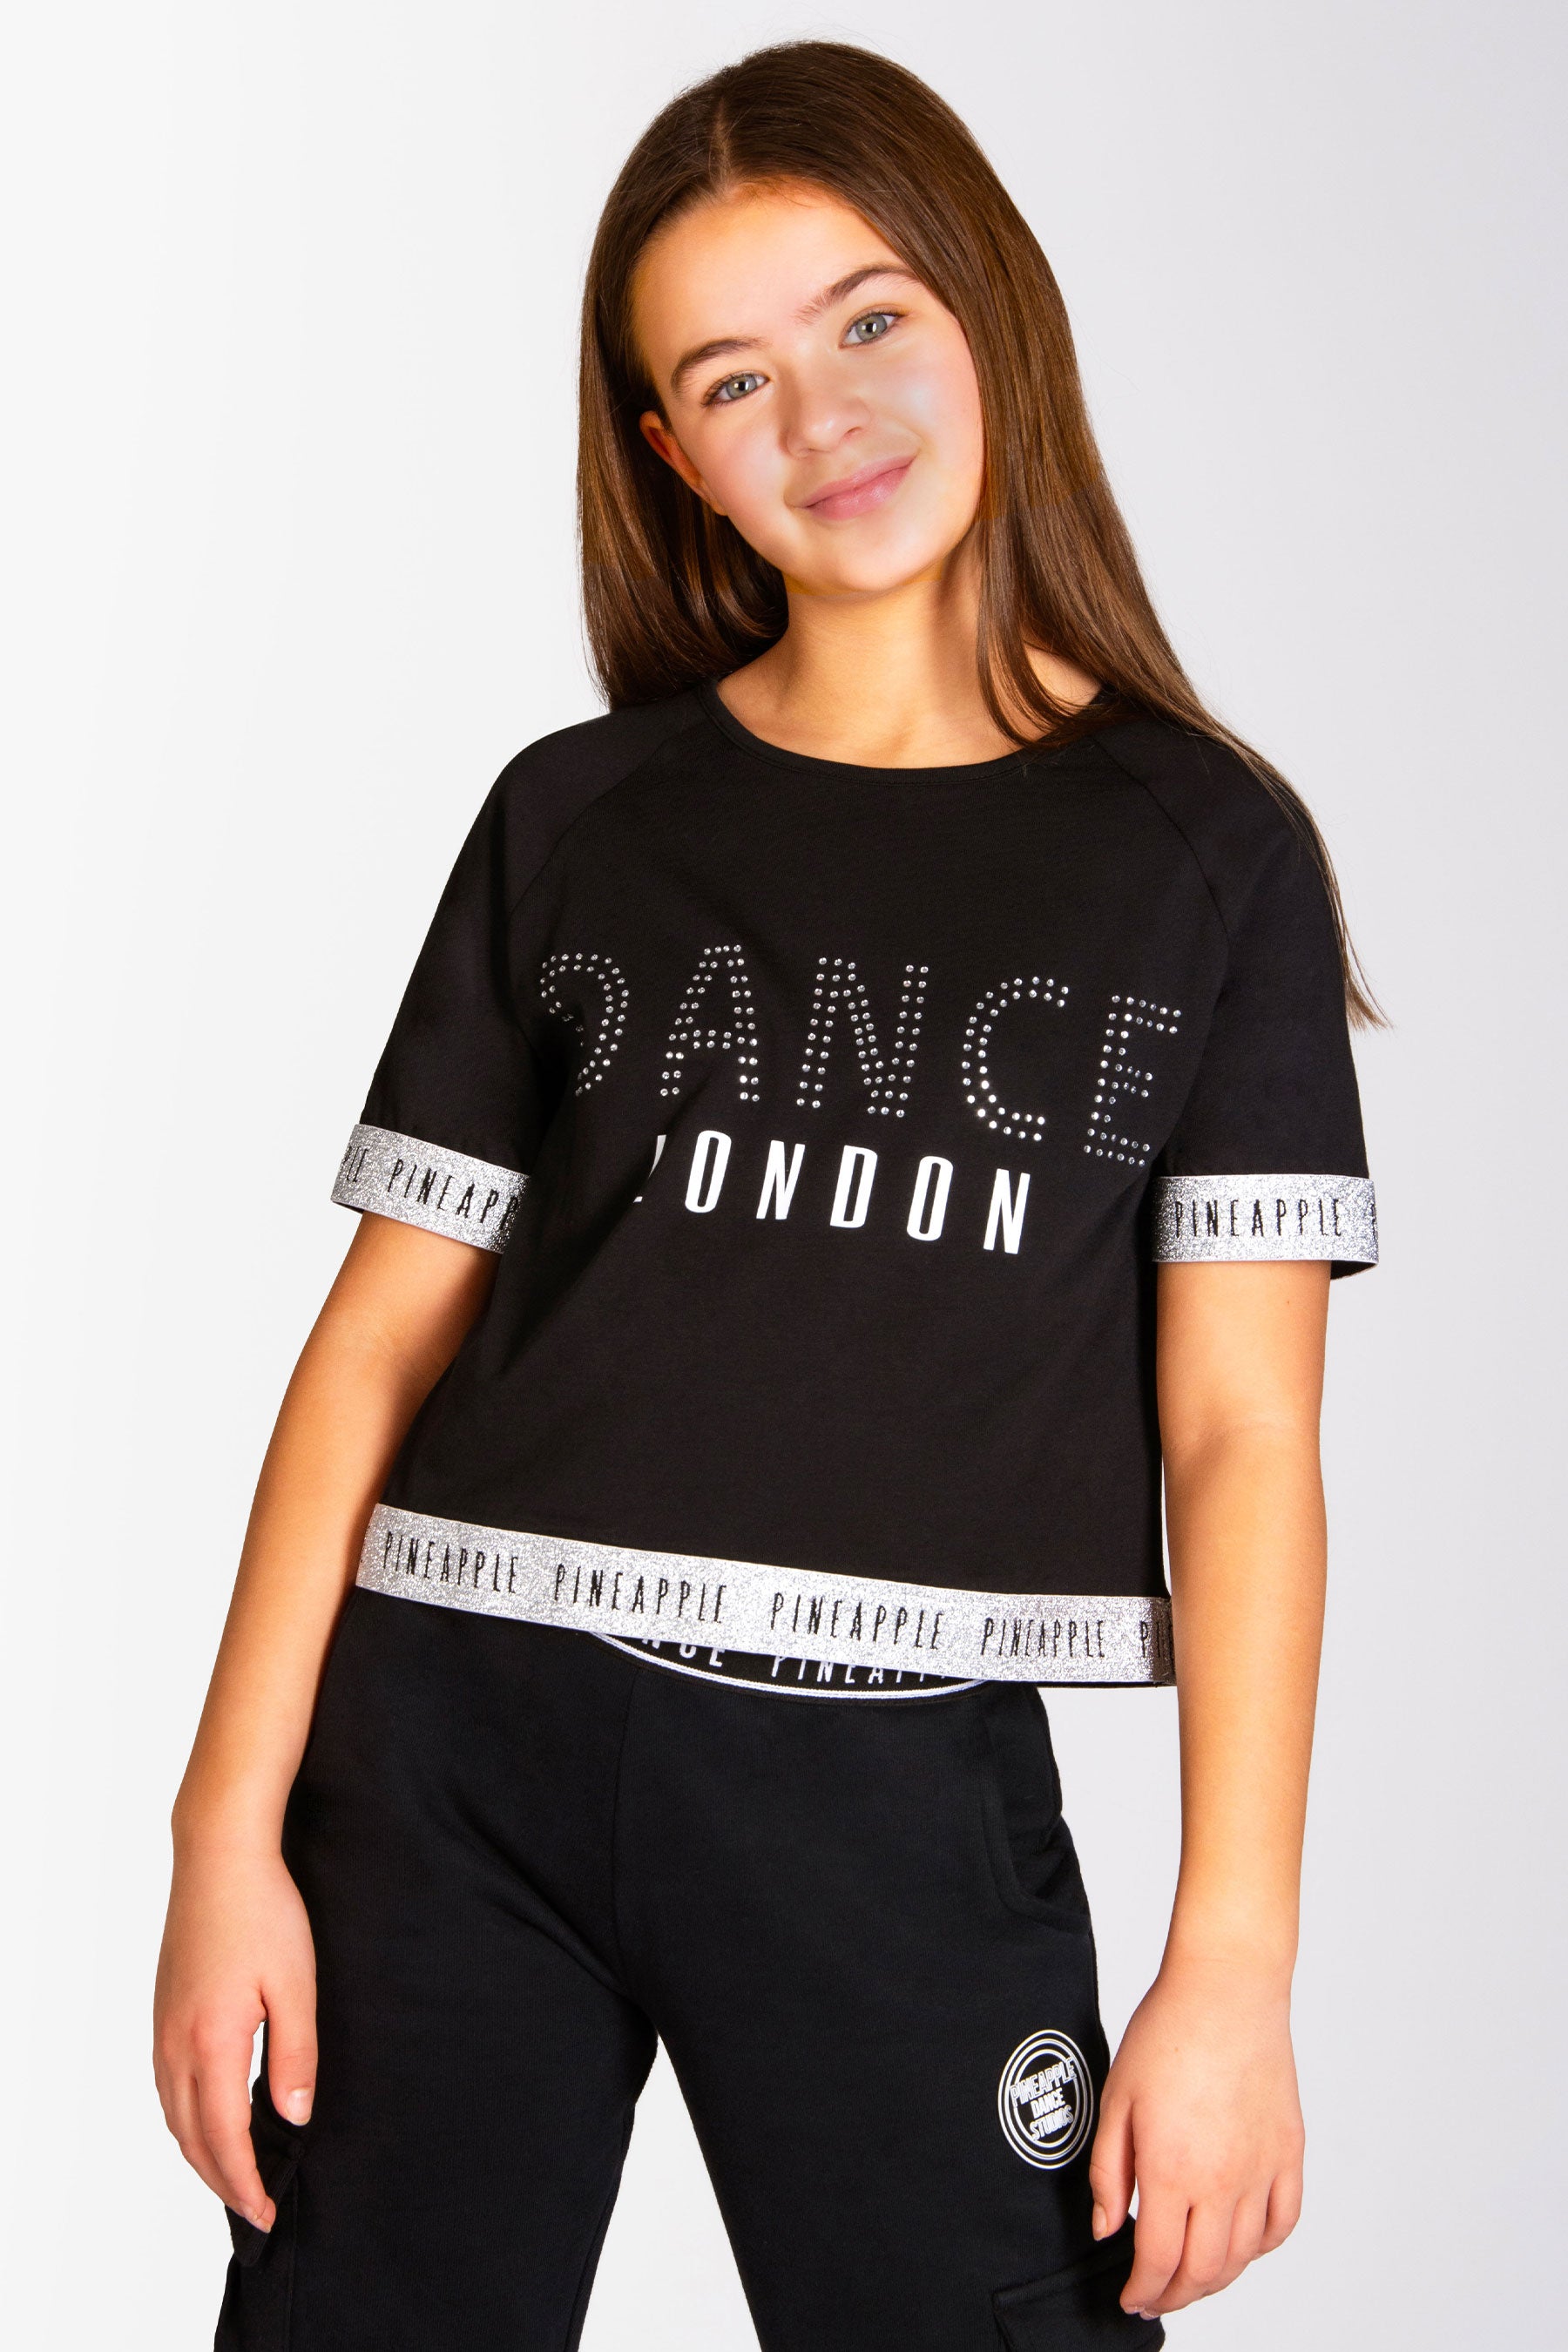 PINEAPPLE Dancewear Girls Dance Jacquard Tape Leggings Black / Rose Gold  Glitter